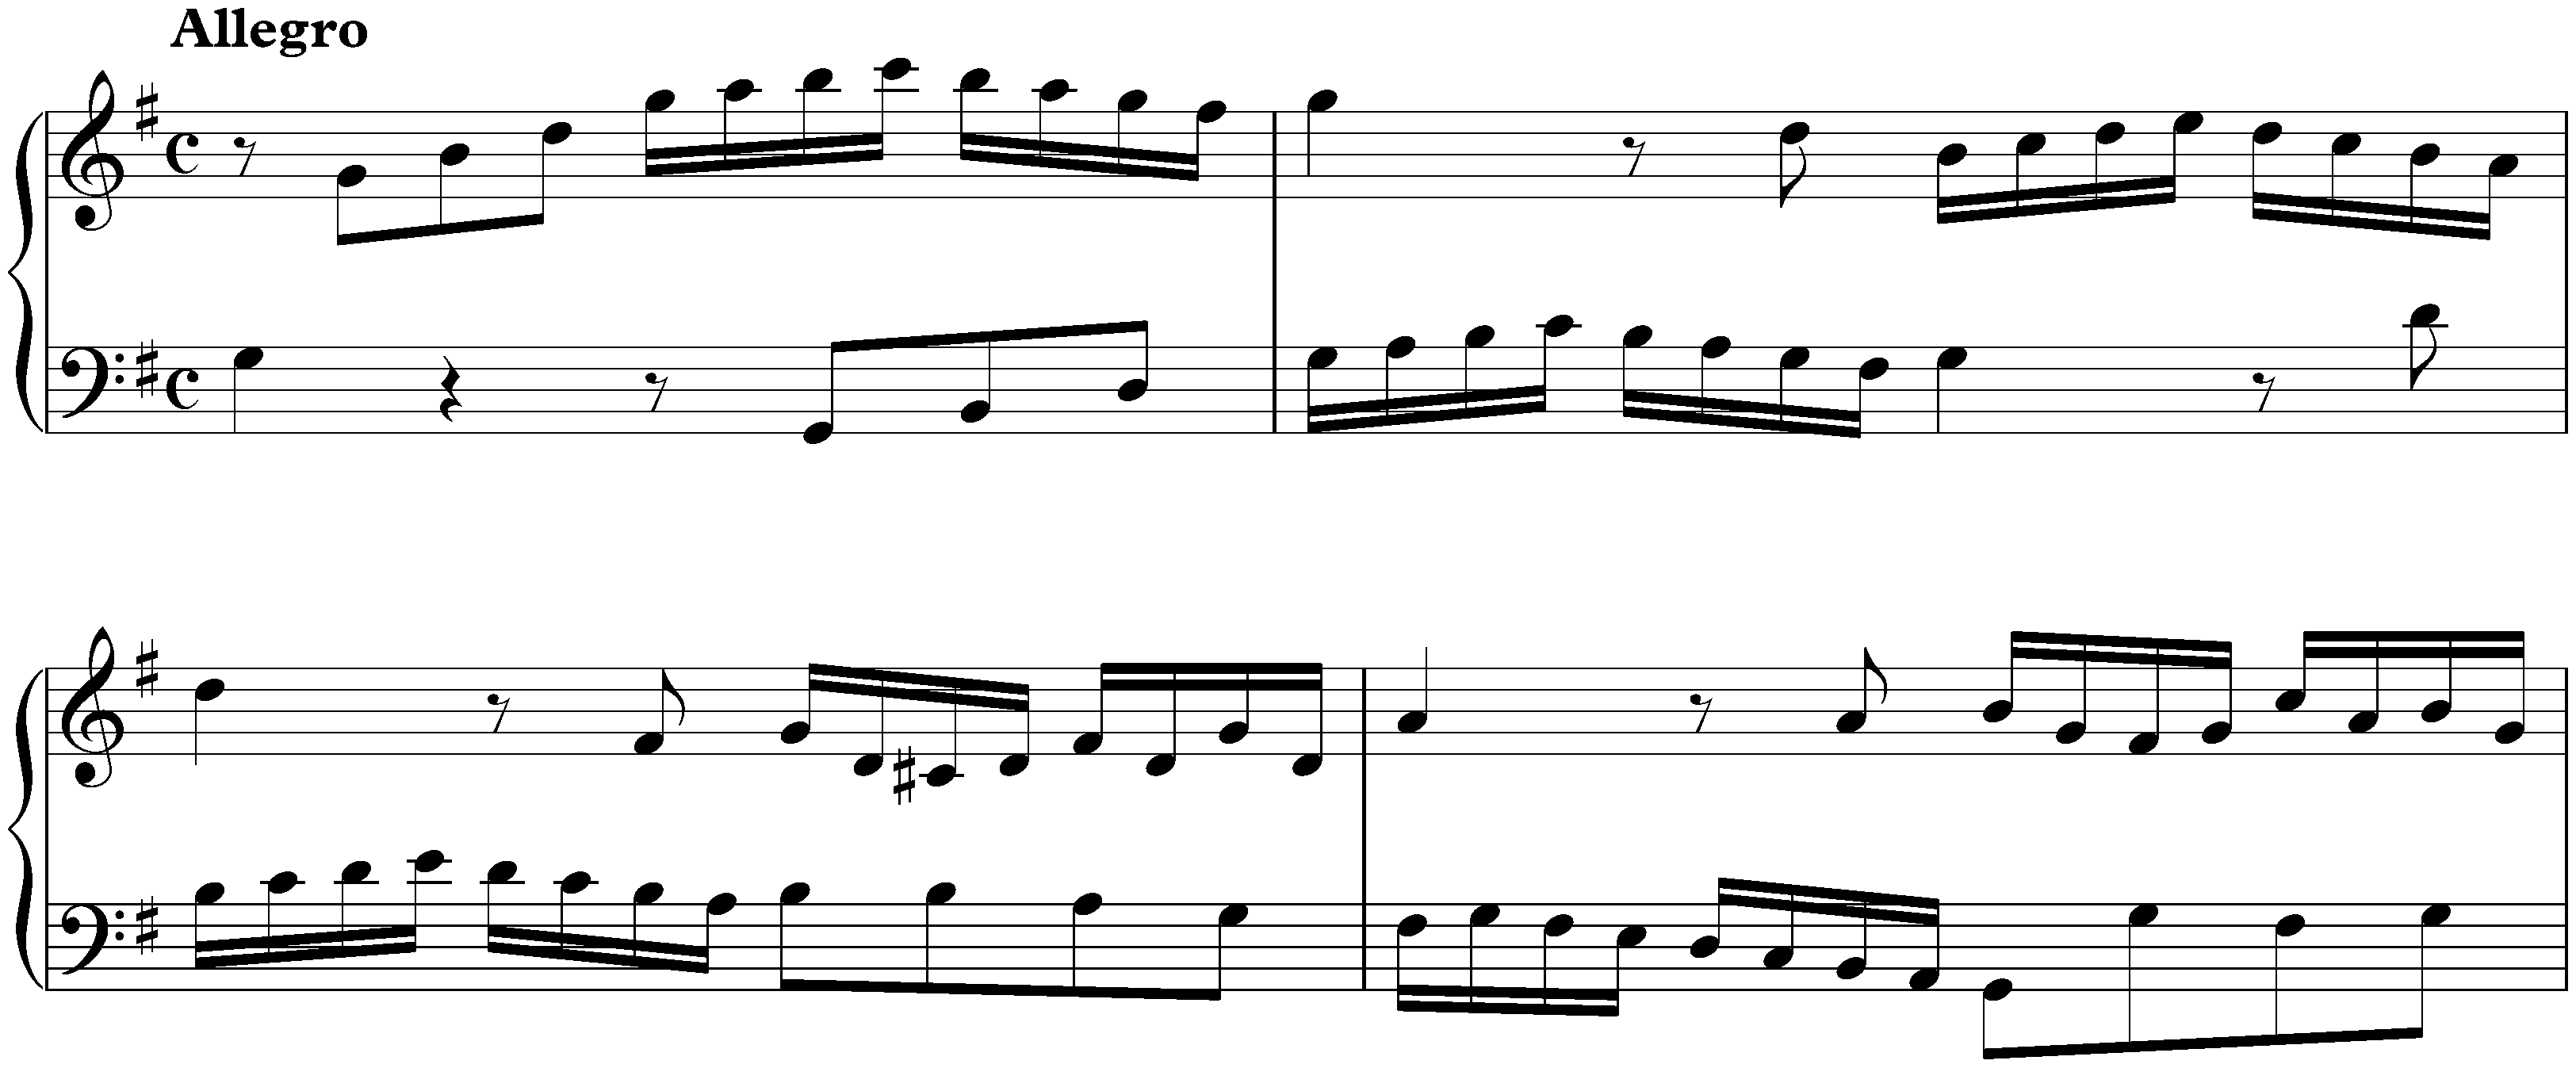 Sonata in G major, K. 71